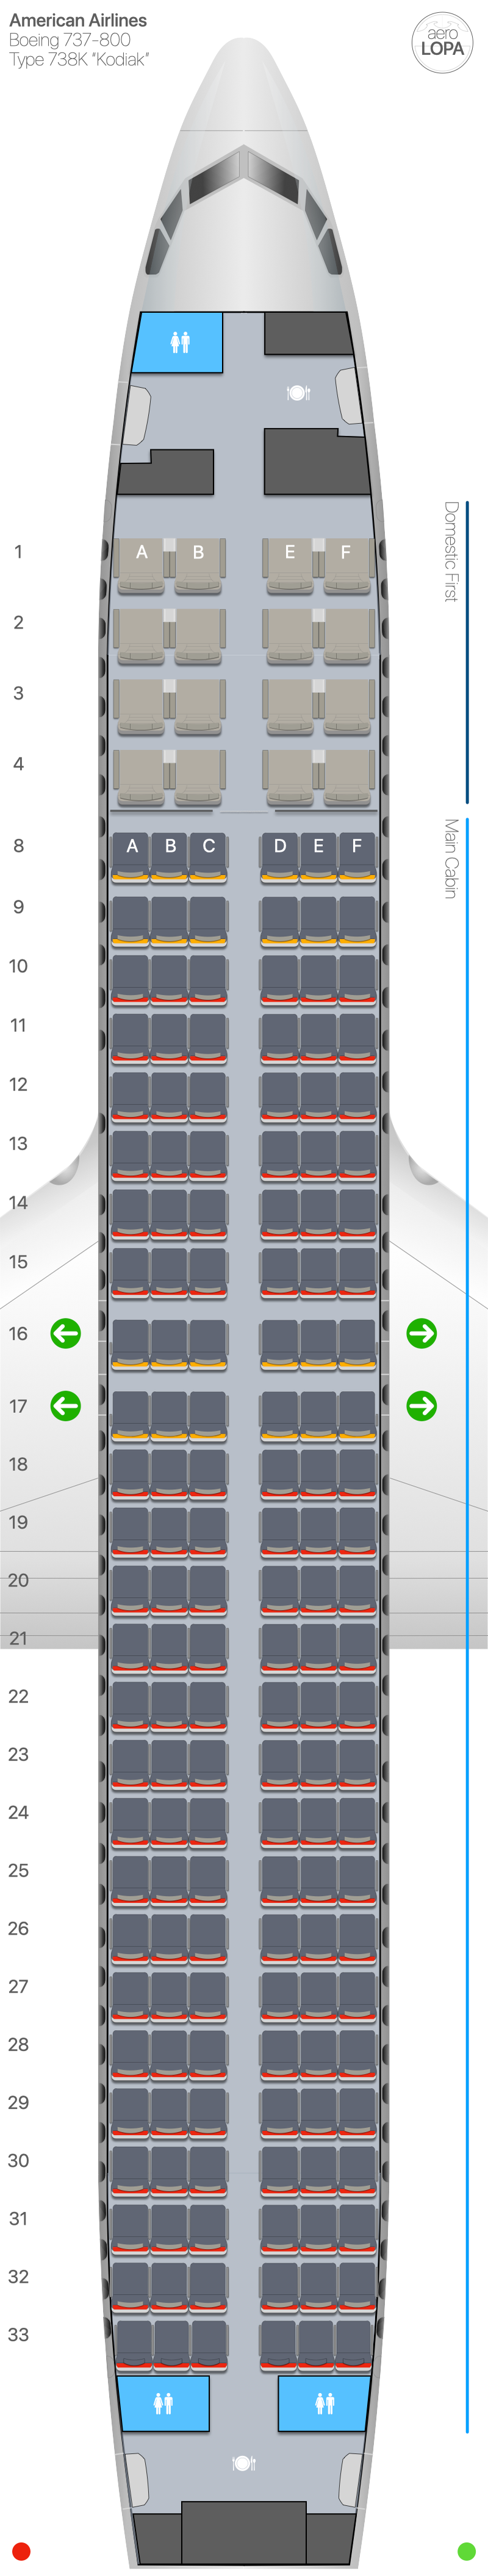 Aa Boeing 738k Seat Plan Aerolopa